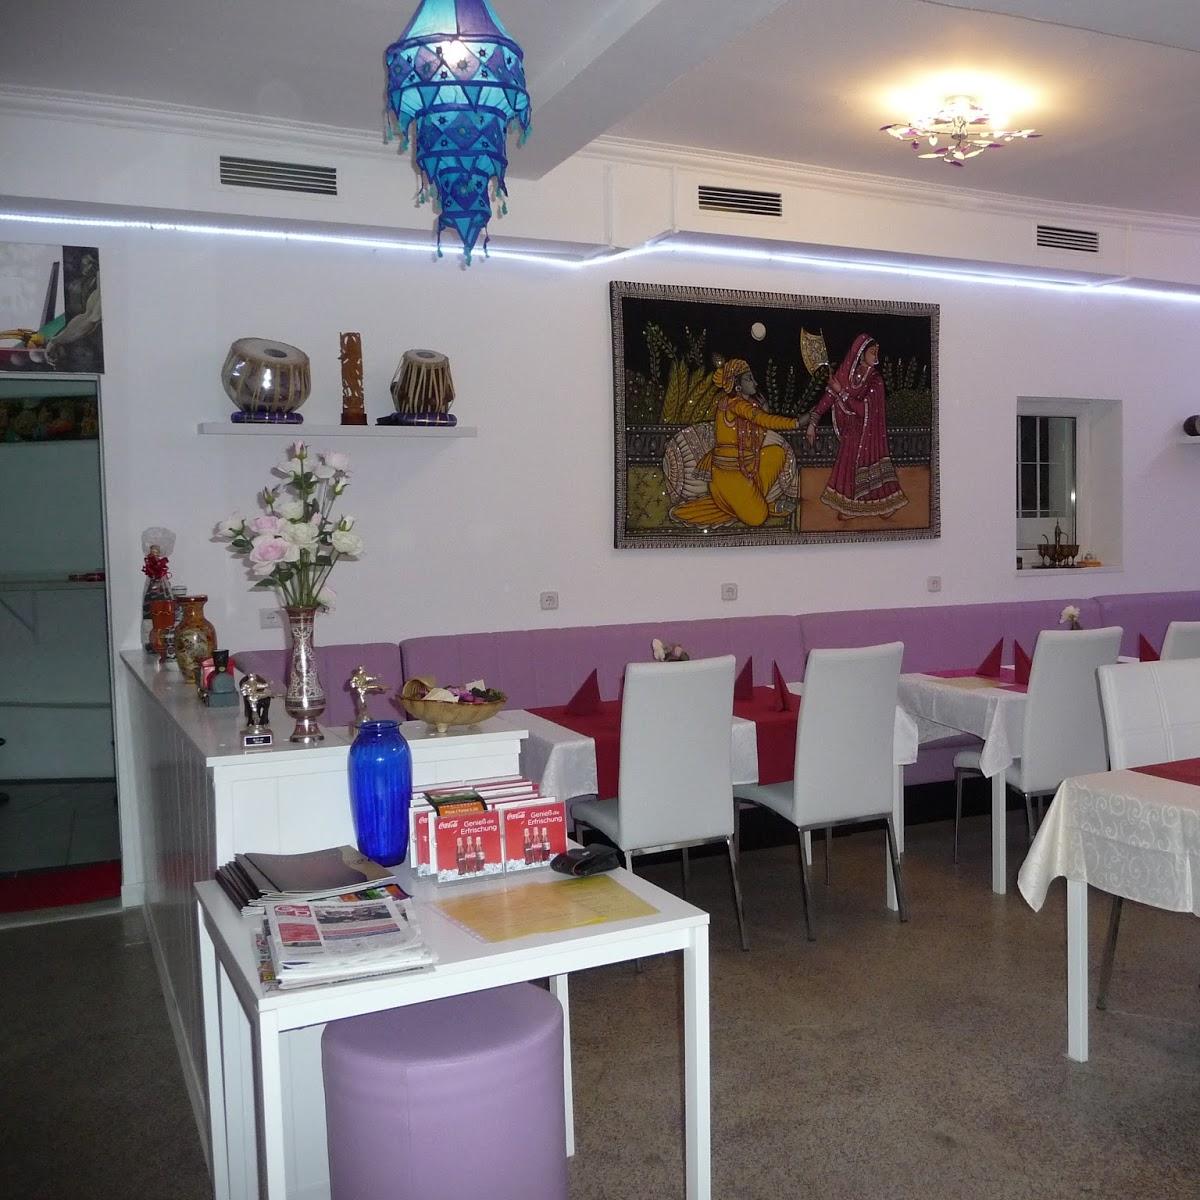 Restaurant "The Taste of India" in Traiskirchen